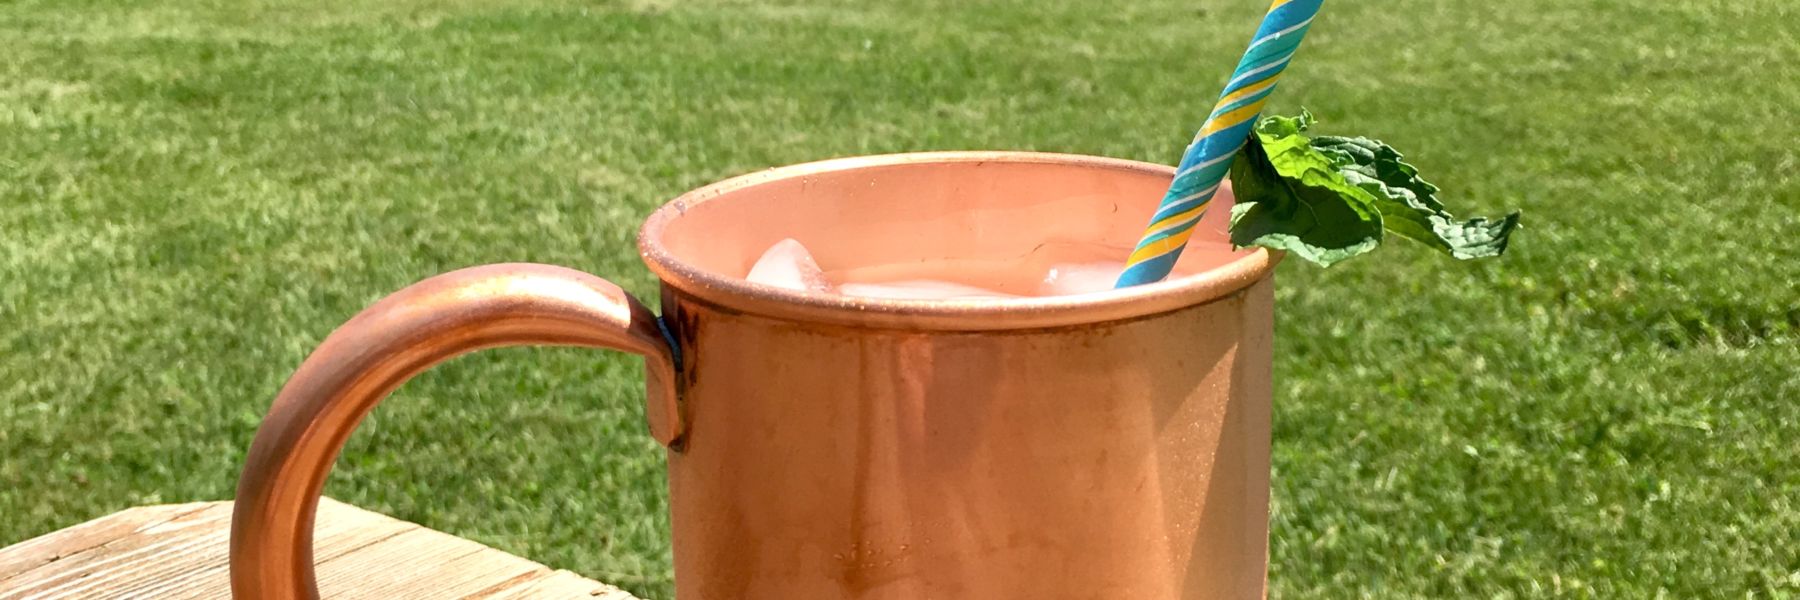 Mojito-copper-mug-summer-drink